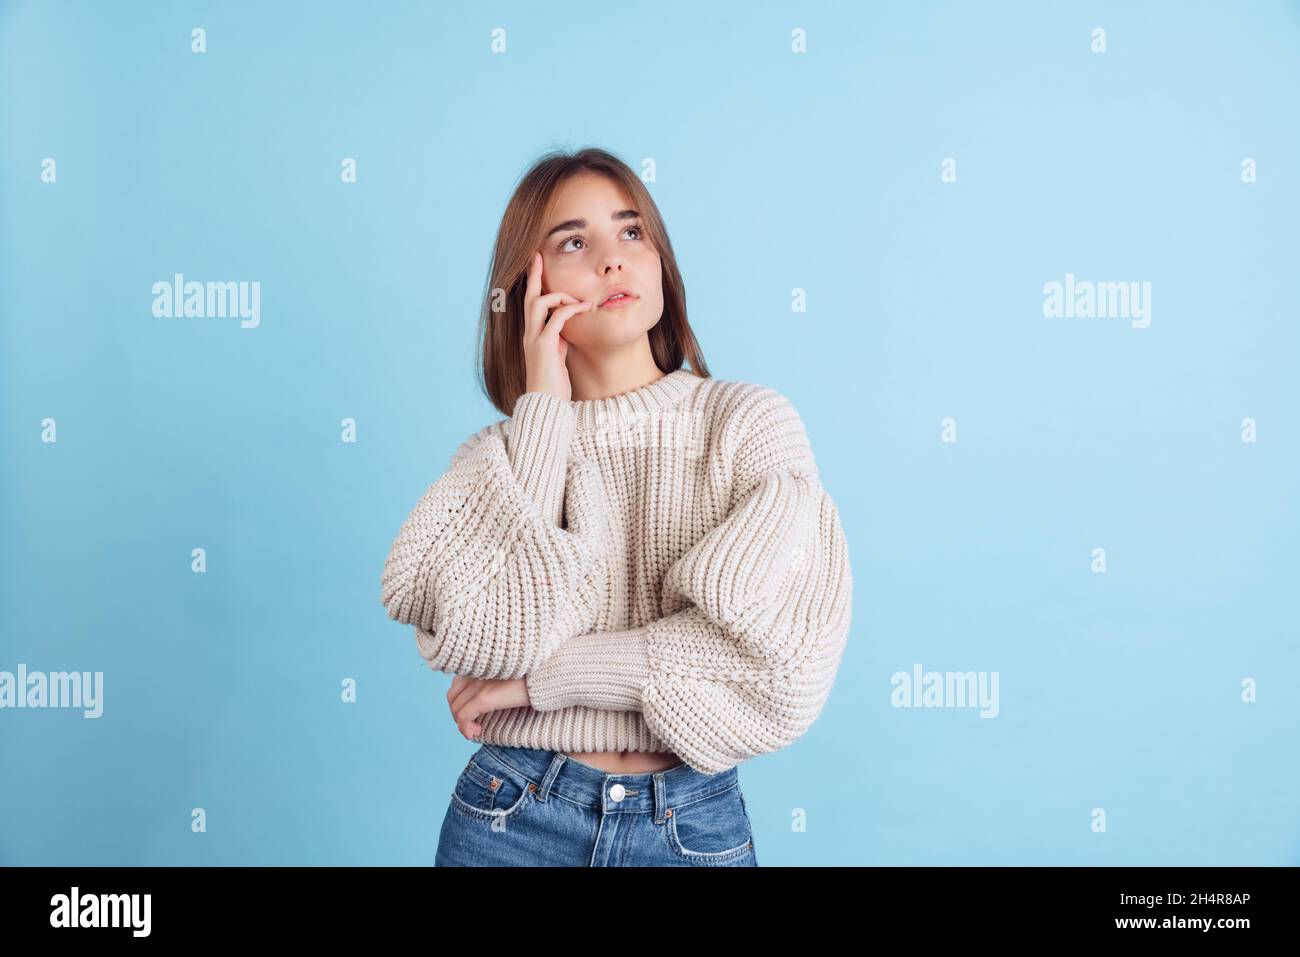 Portrait eines jungen schönen Mädchens, Student in legerer Kleidung, isoliert auf hellblauem Studiohintergrund aufblickend Stockfoto